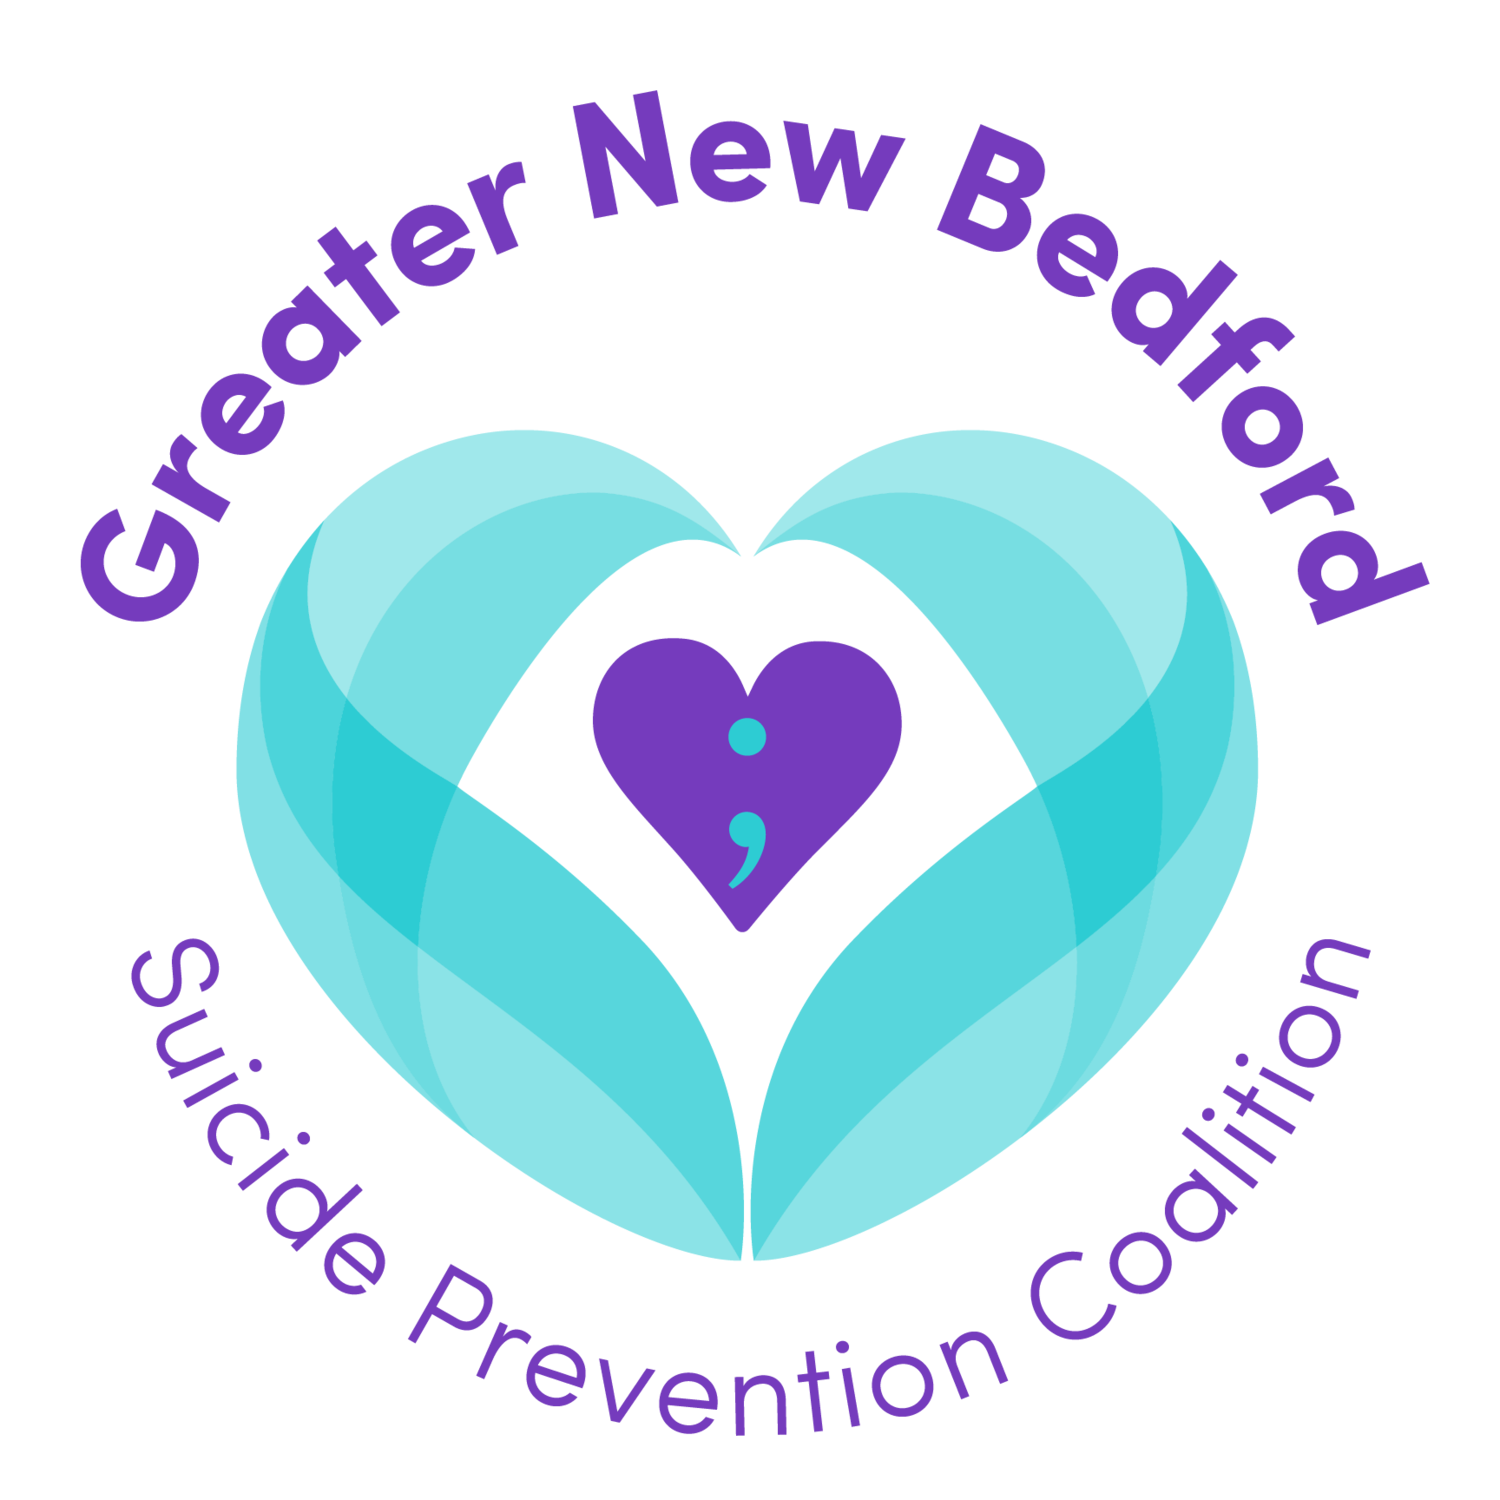 GNB Suicide Prevention 